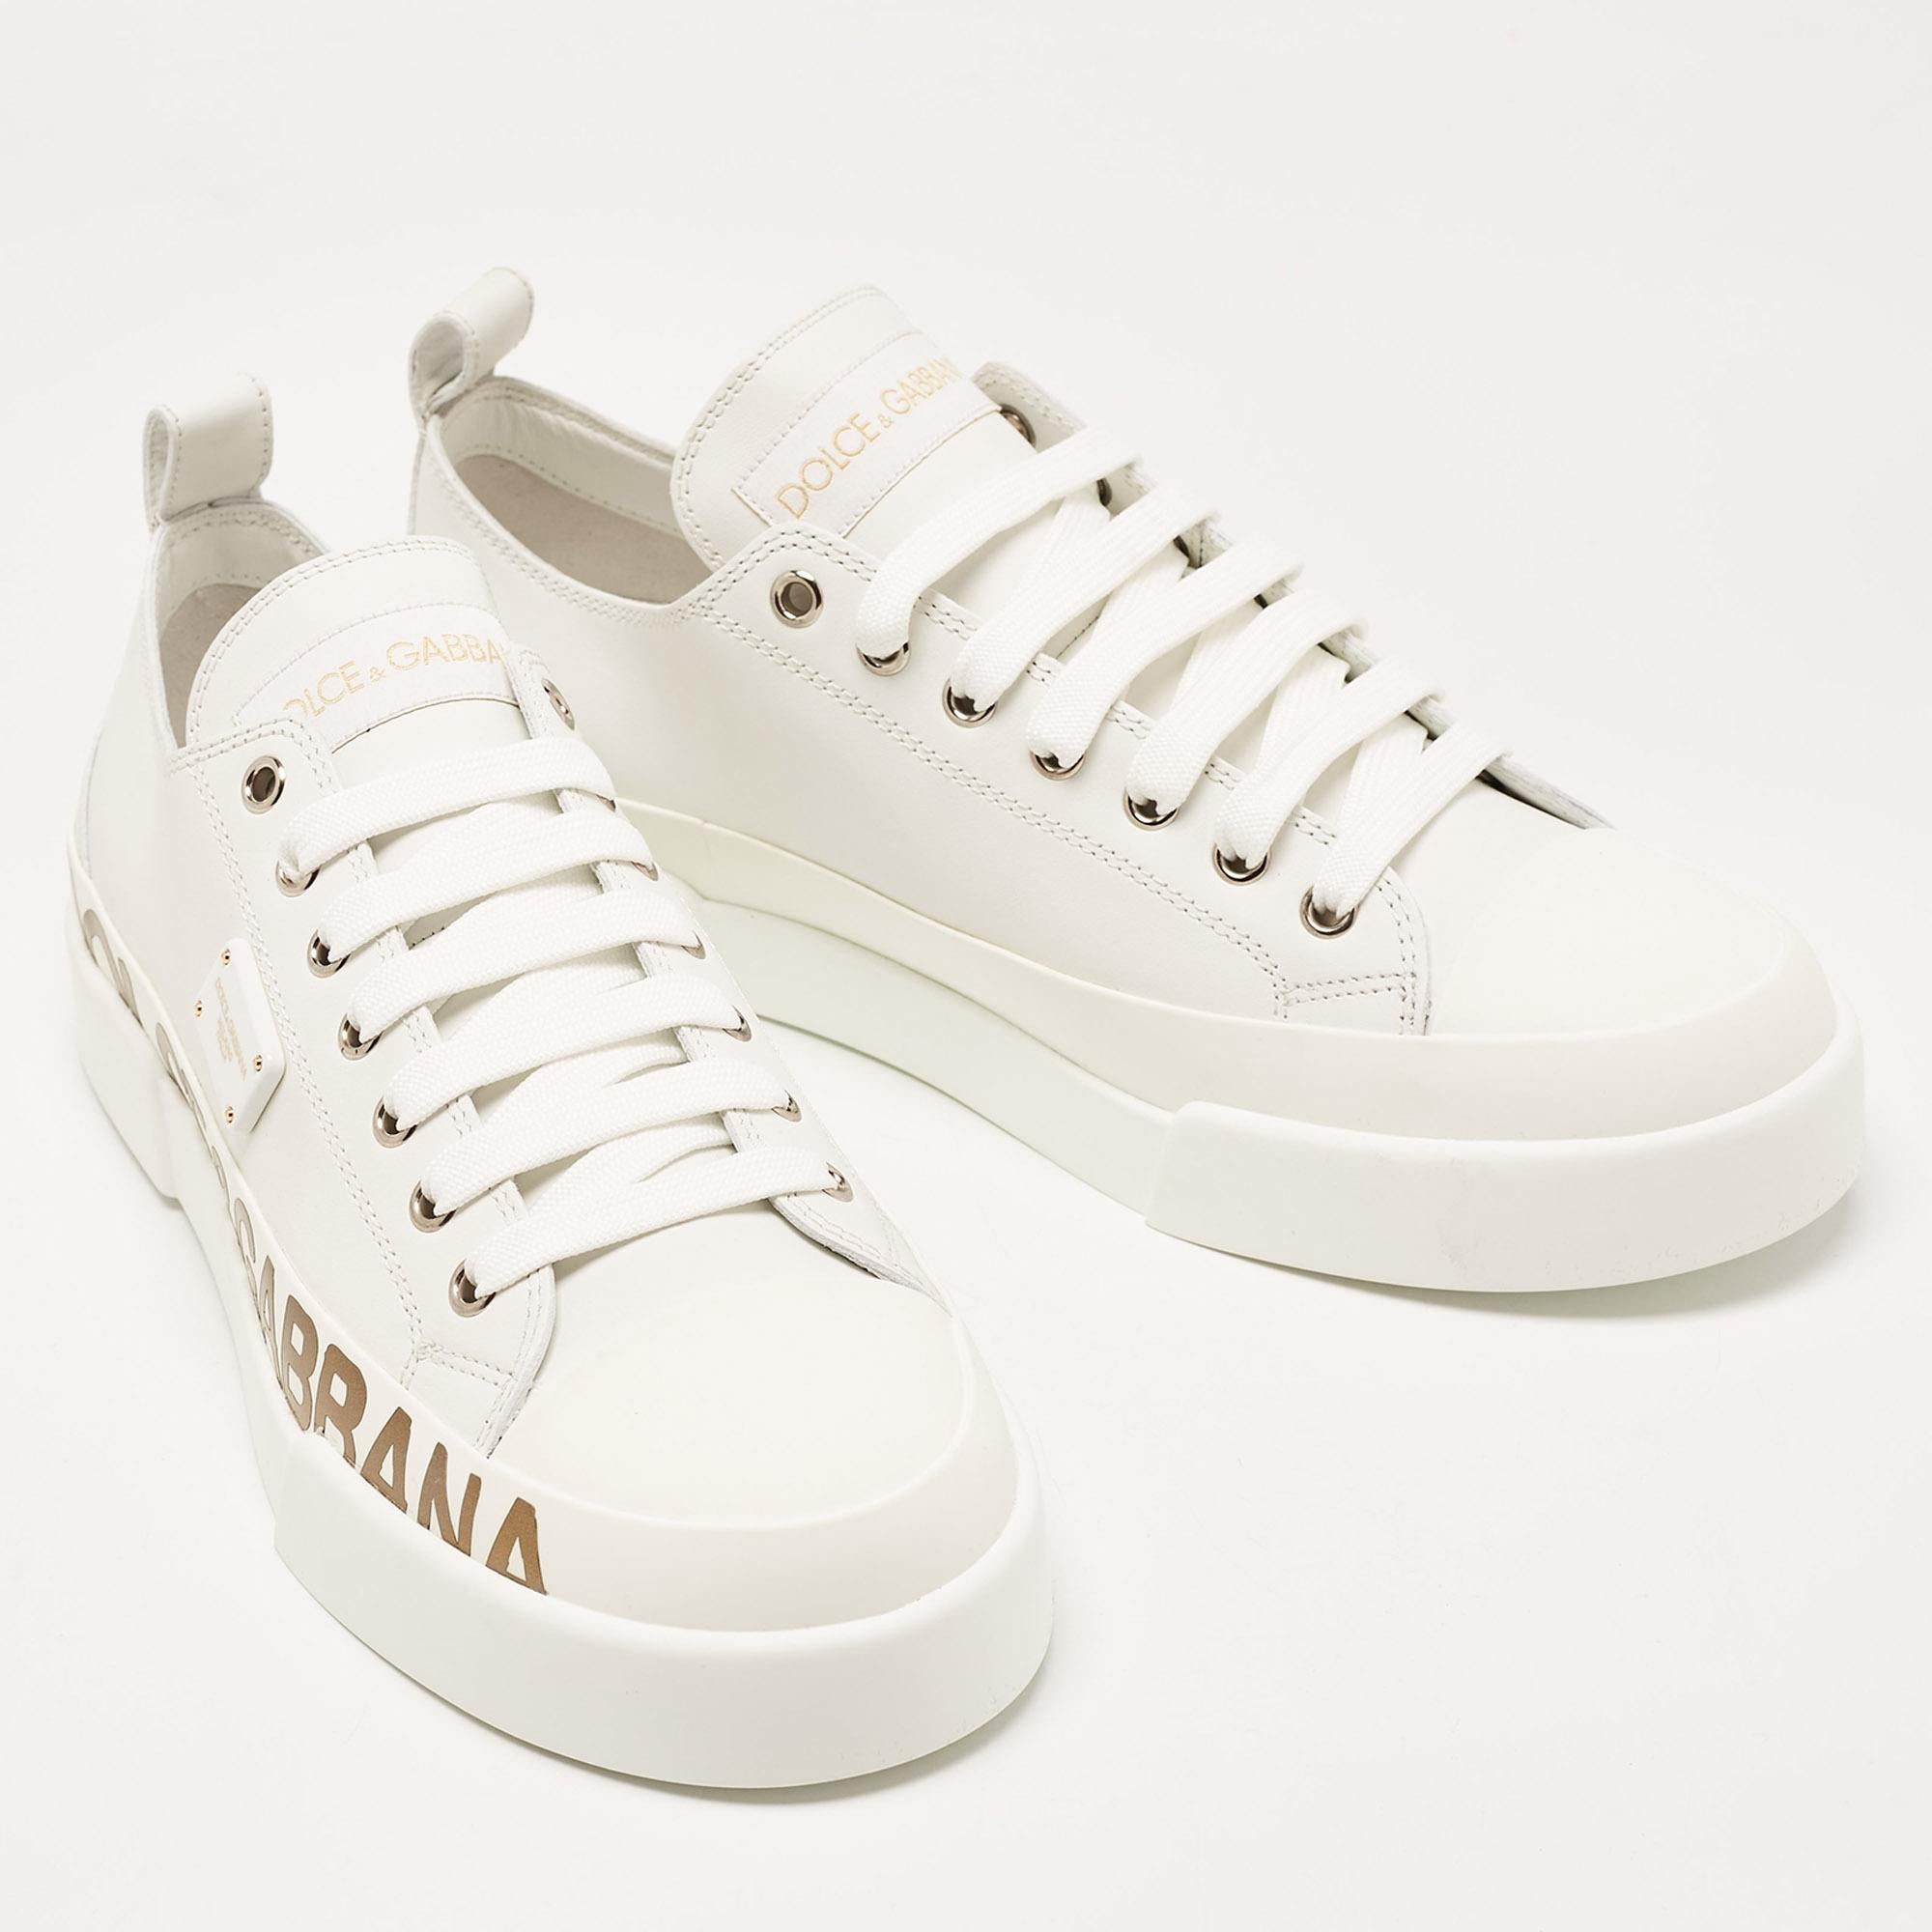 Dolce & Gabbana White/Gold Leather Portofino Sneakers Size 41 1